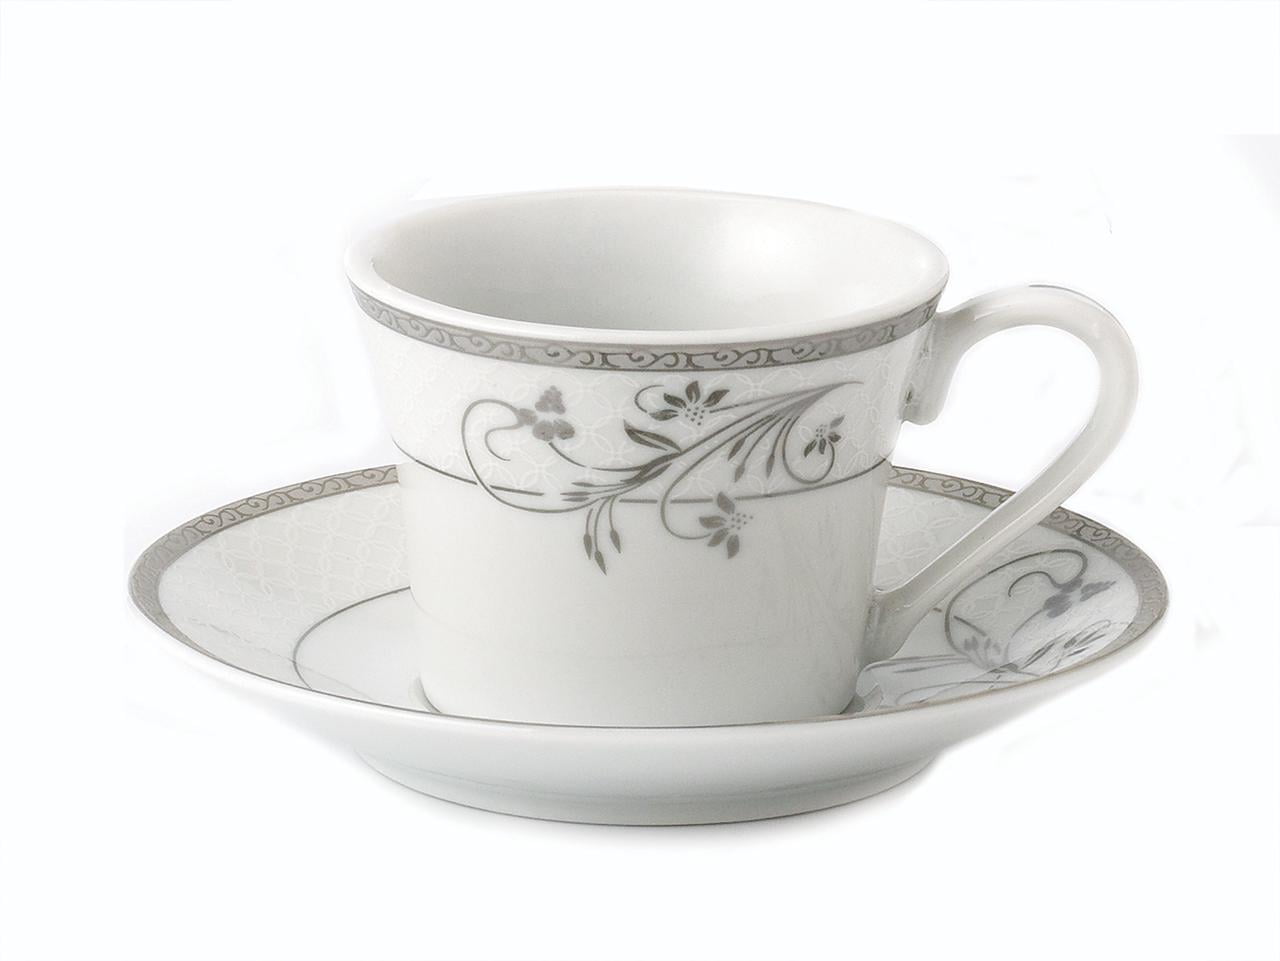 Ceramic Espresso Cups Set/4: Moka – Chrysler Museum of Art